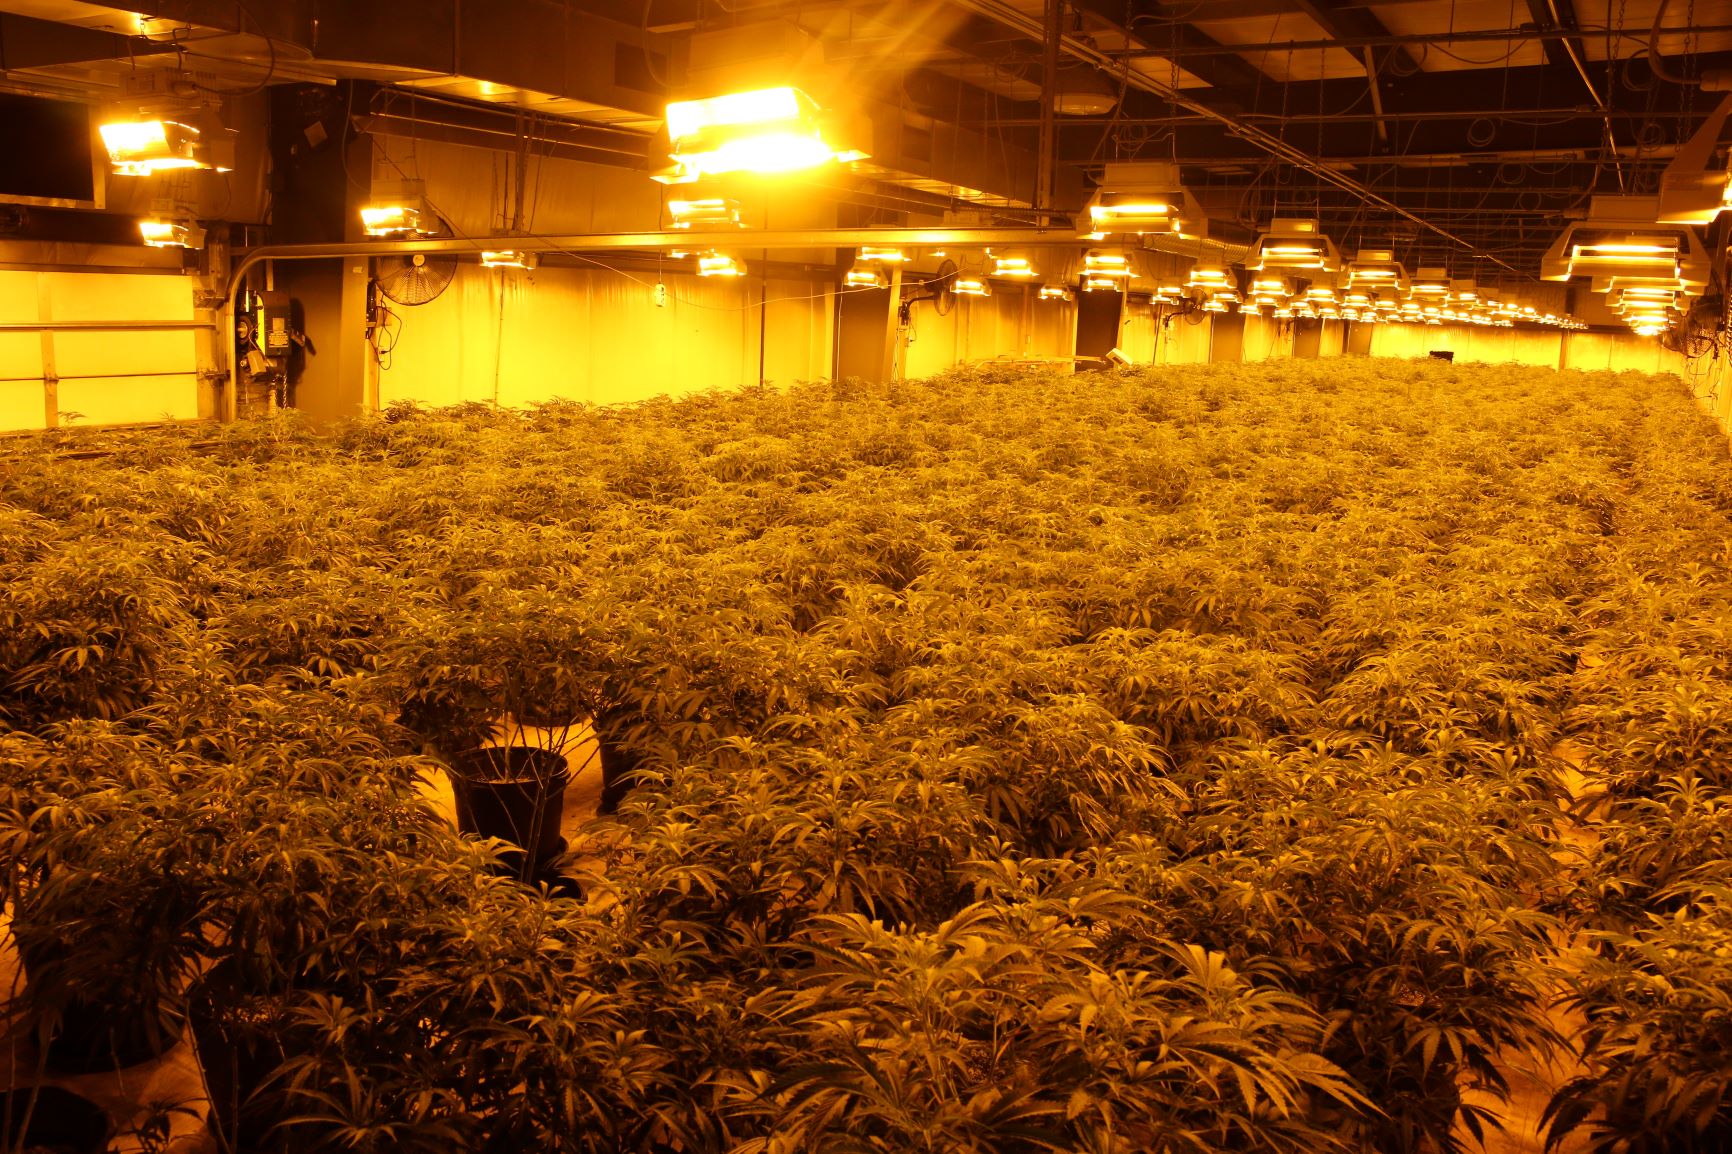 value of seized marijuana in arthur over 6 million